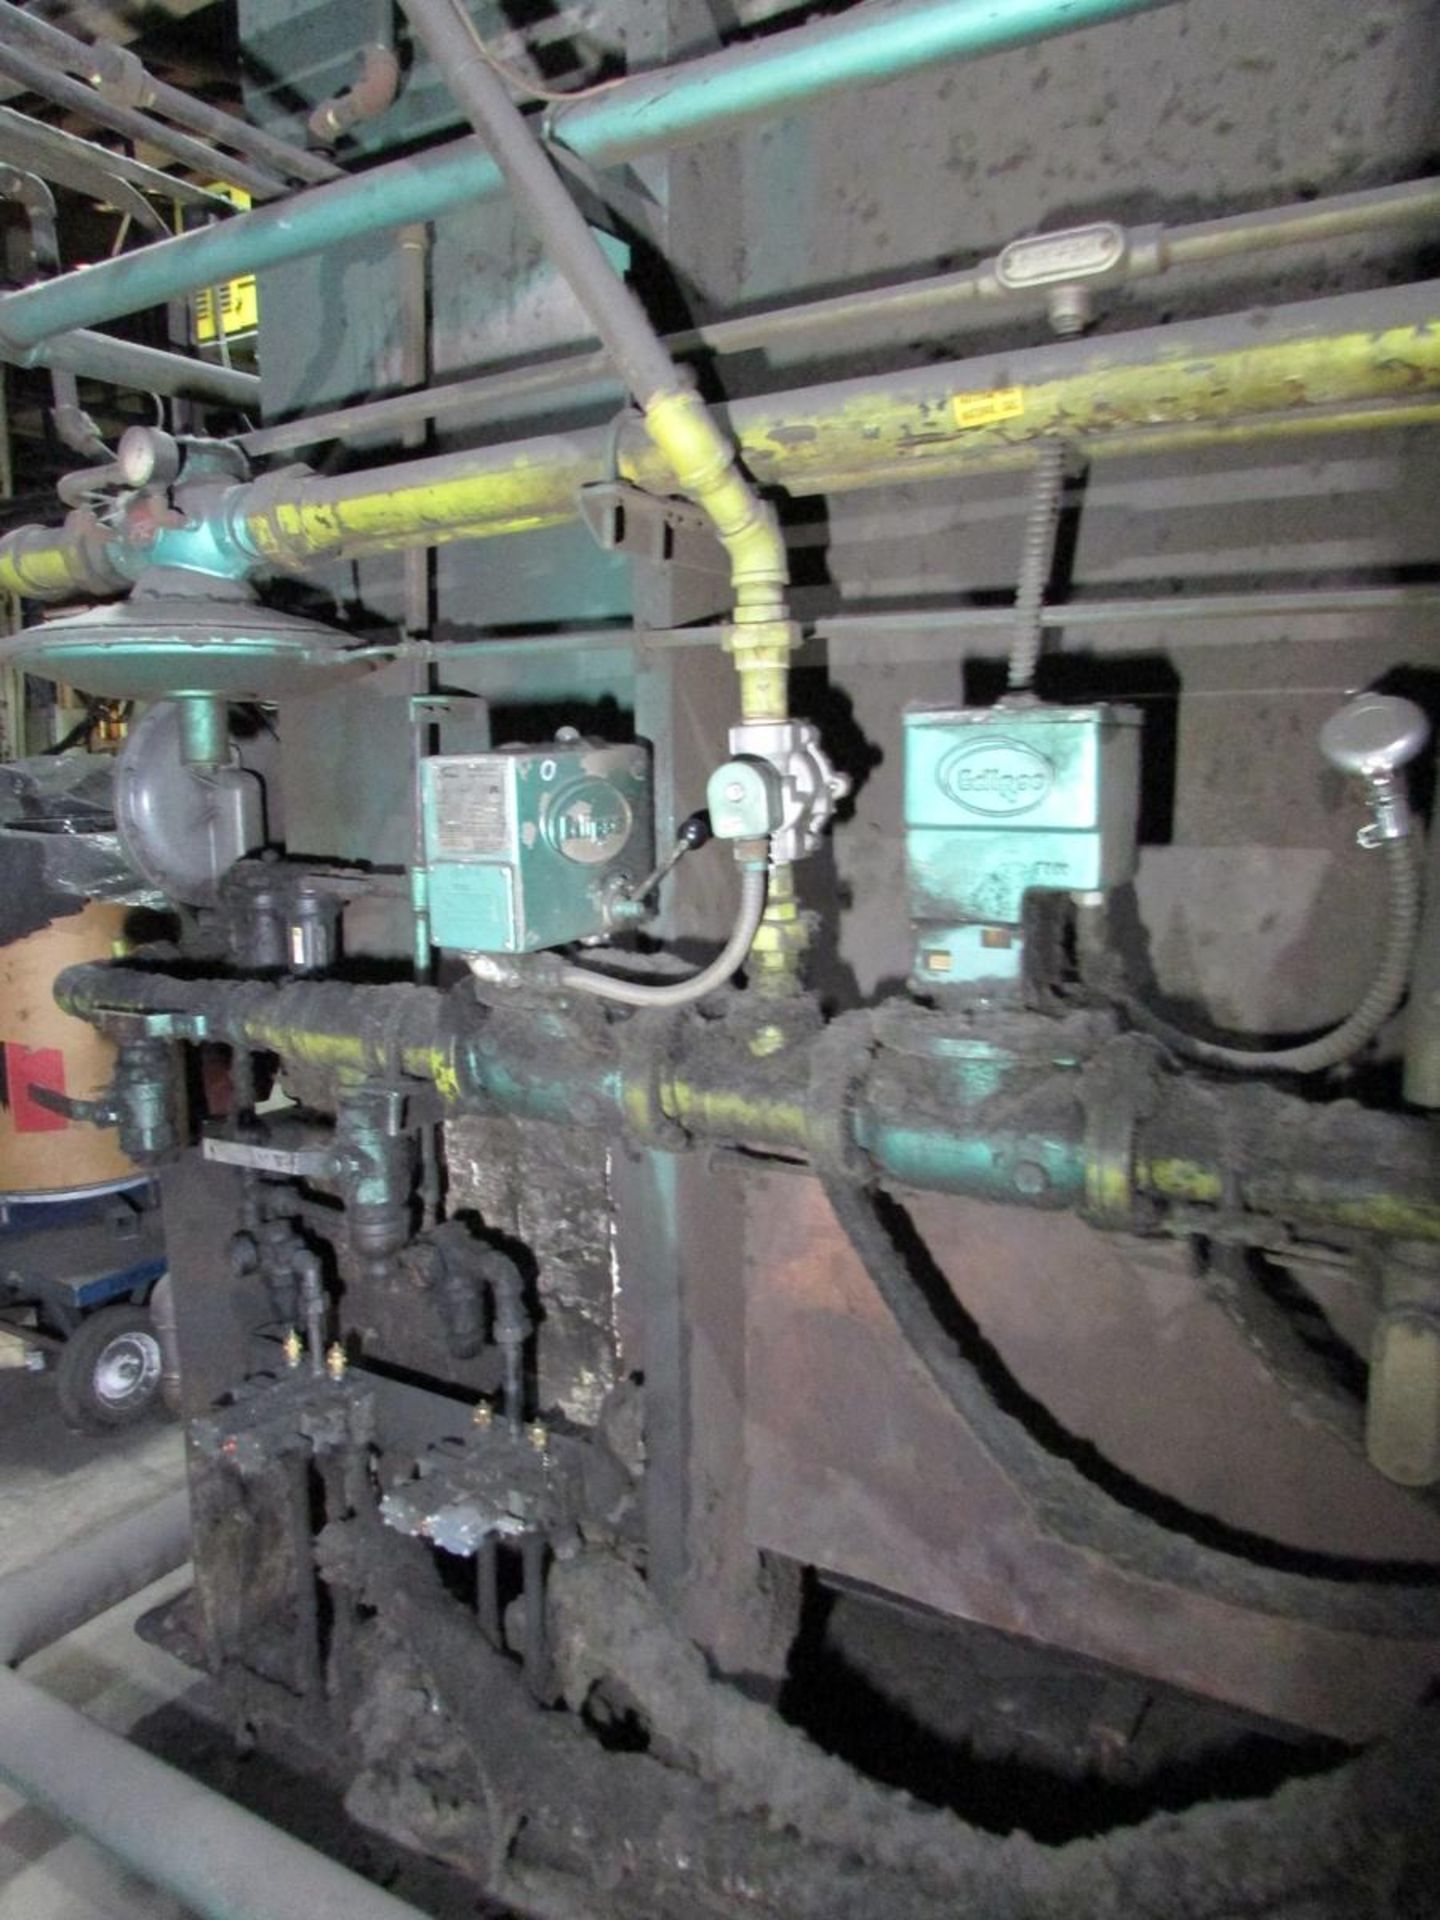 Kleenair 8'x14'x7' Car Bottom NG Heat Treat Oven - Image 11 of 17